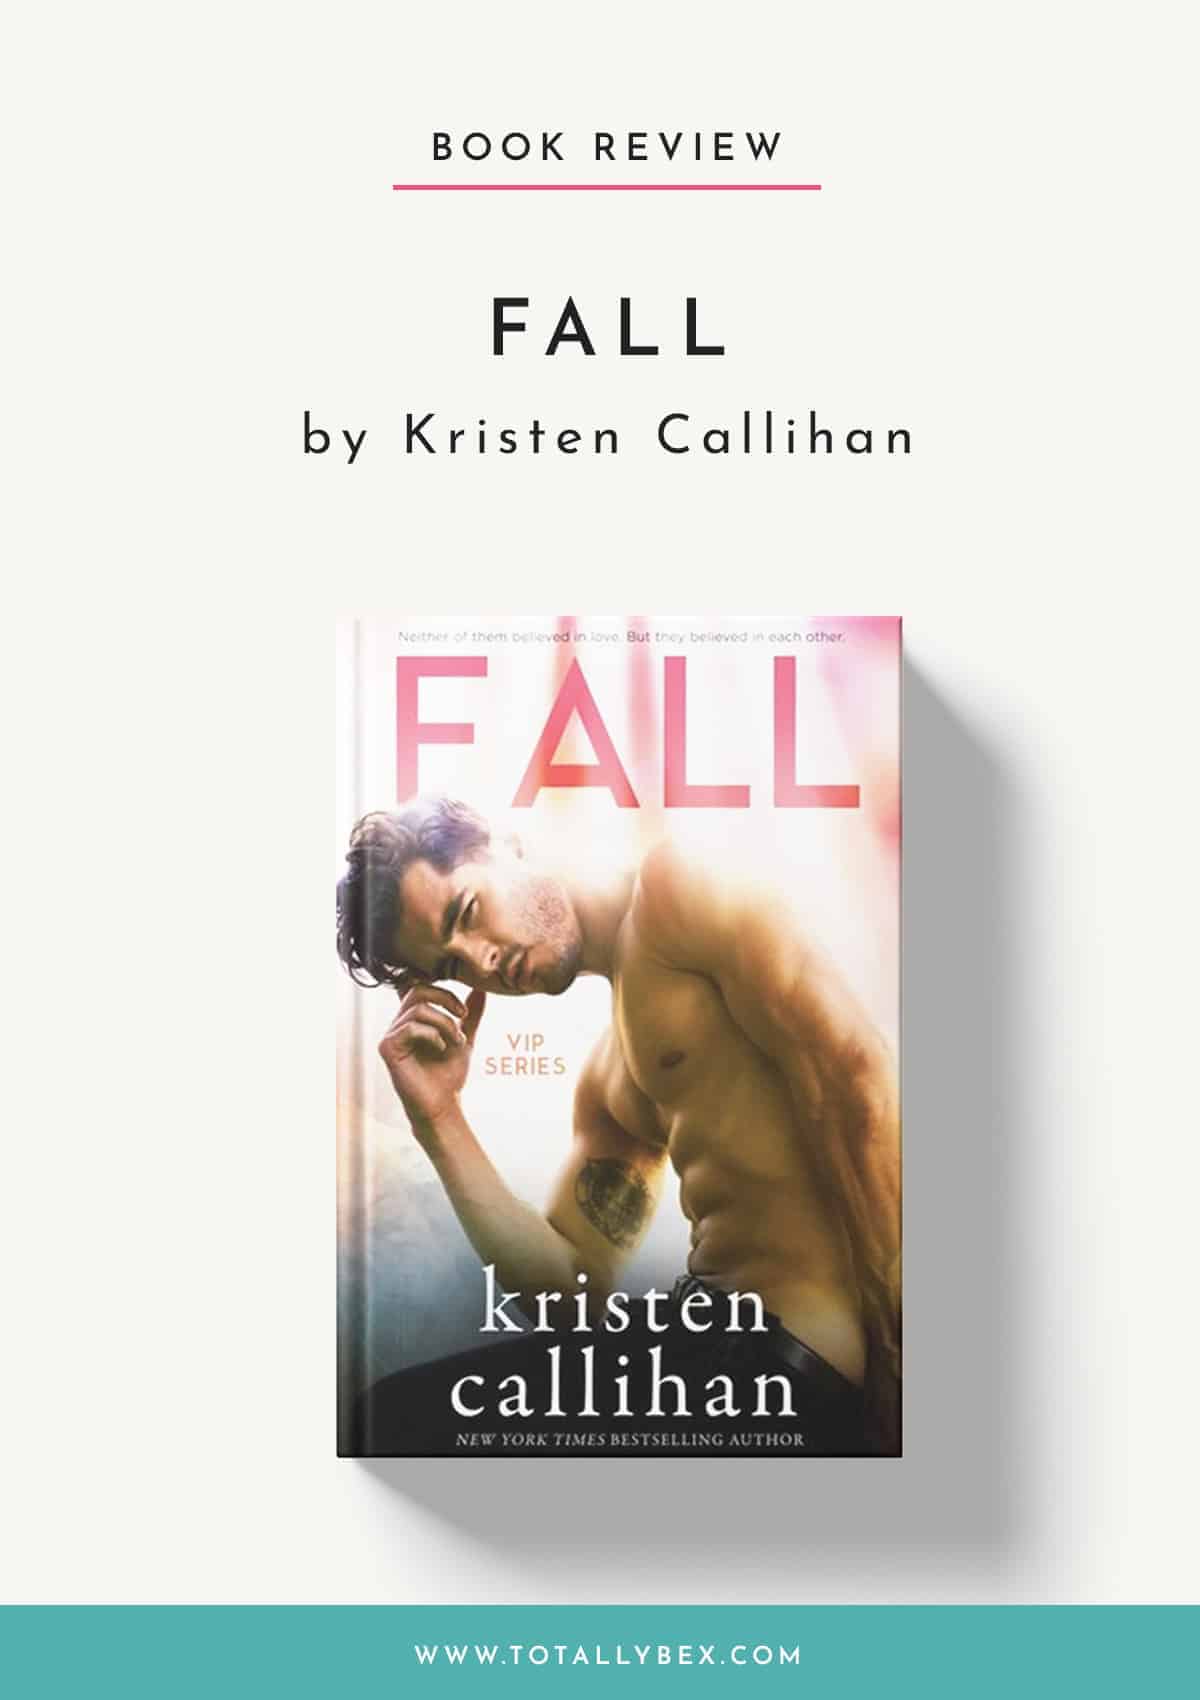 Fall by Kristen Callihan – An Emotional Rockstar Romance with Tons of Heart!